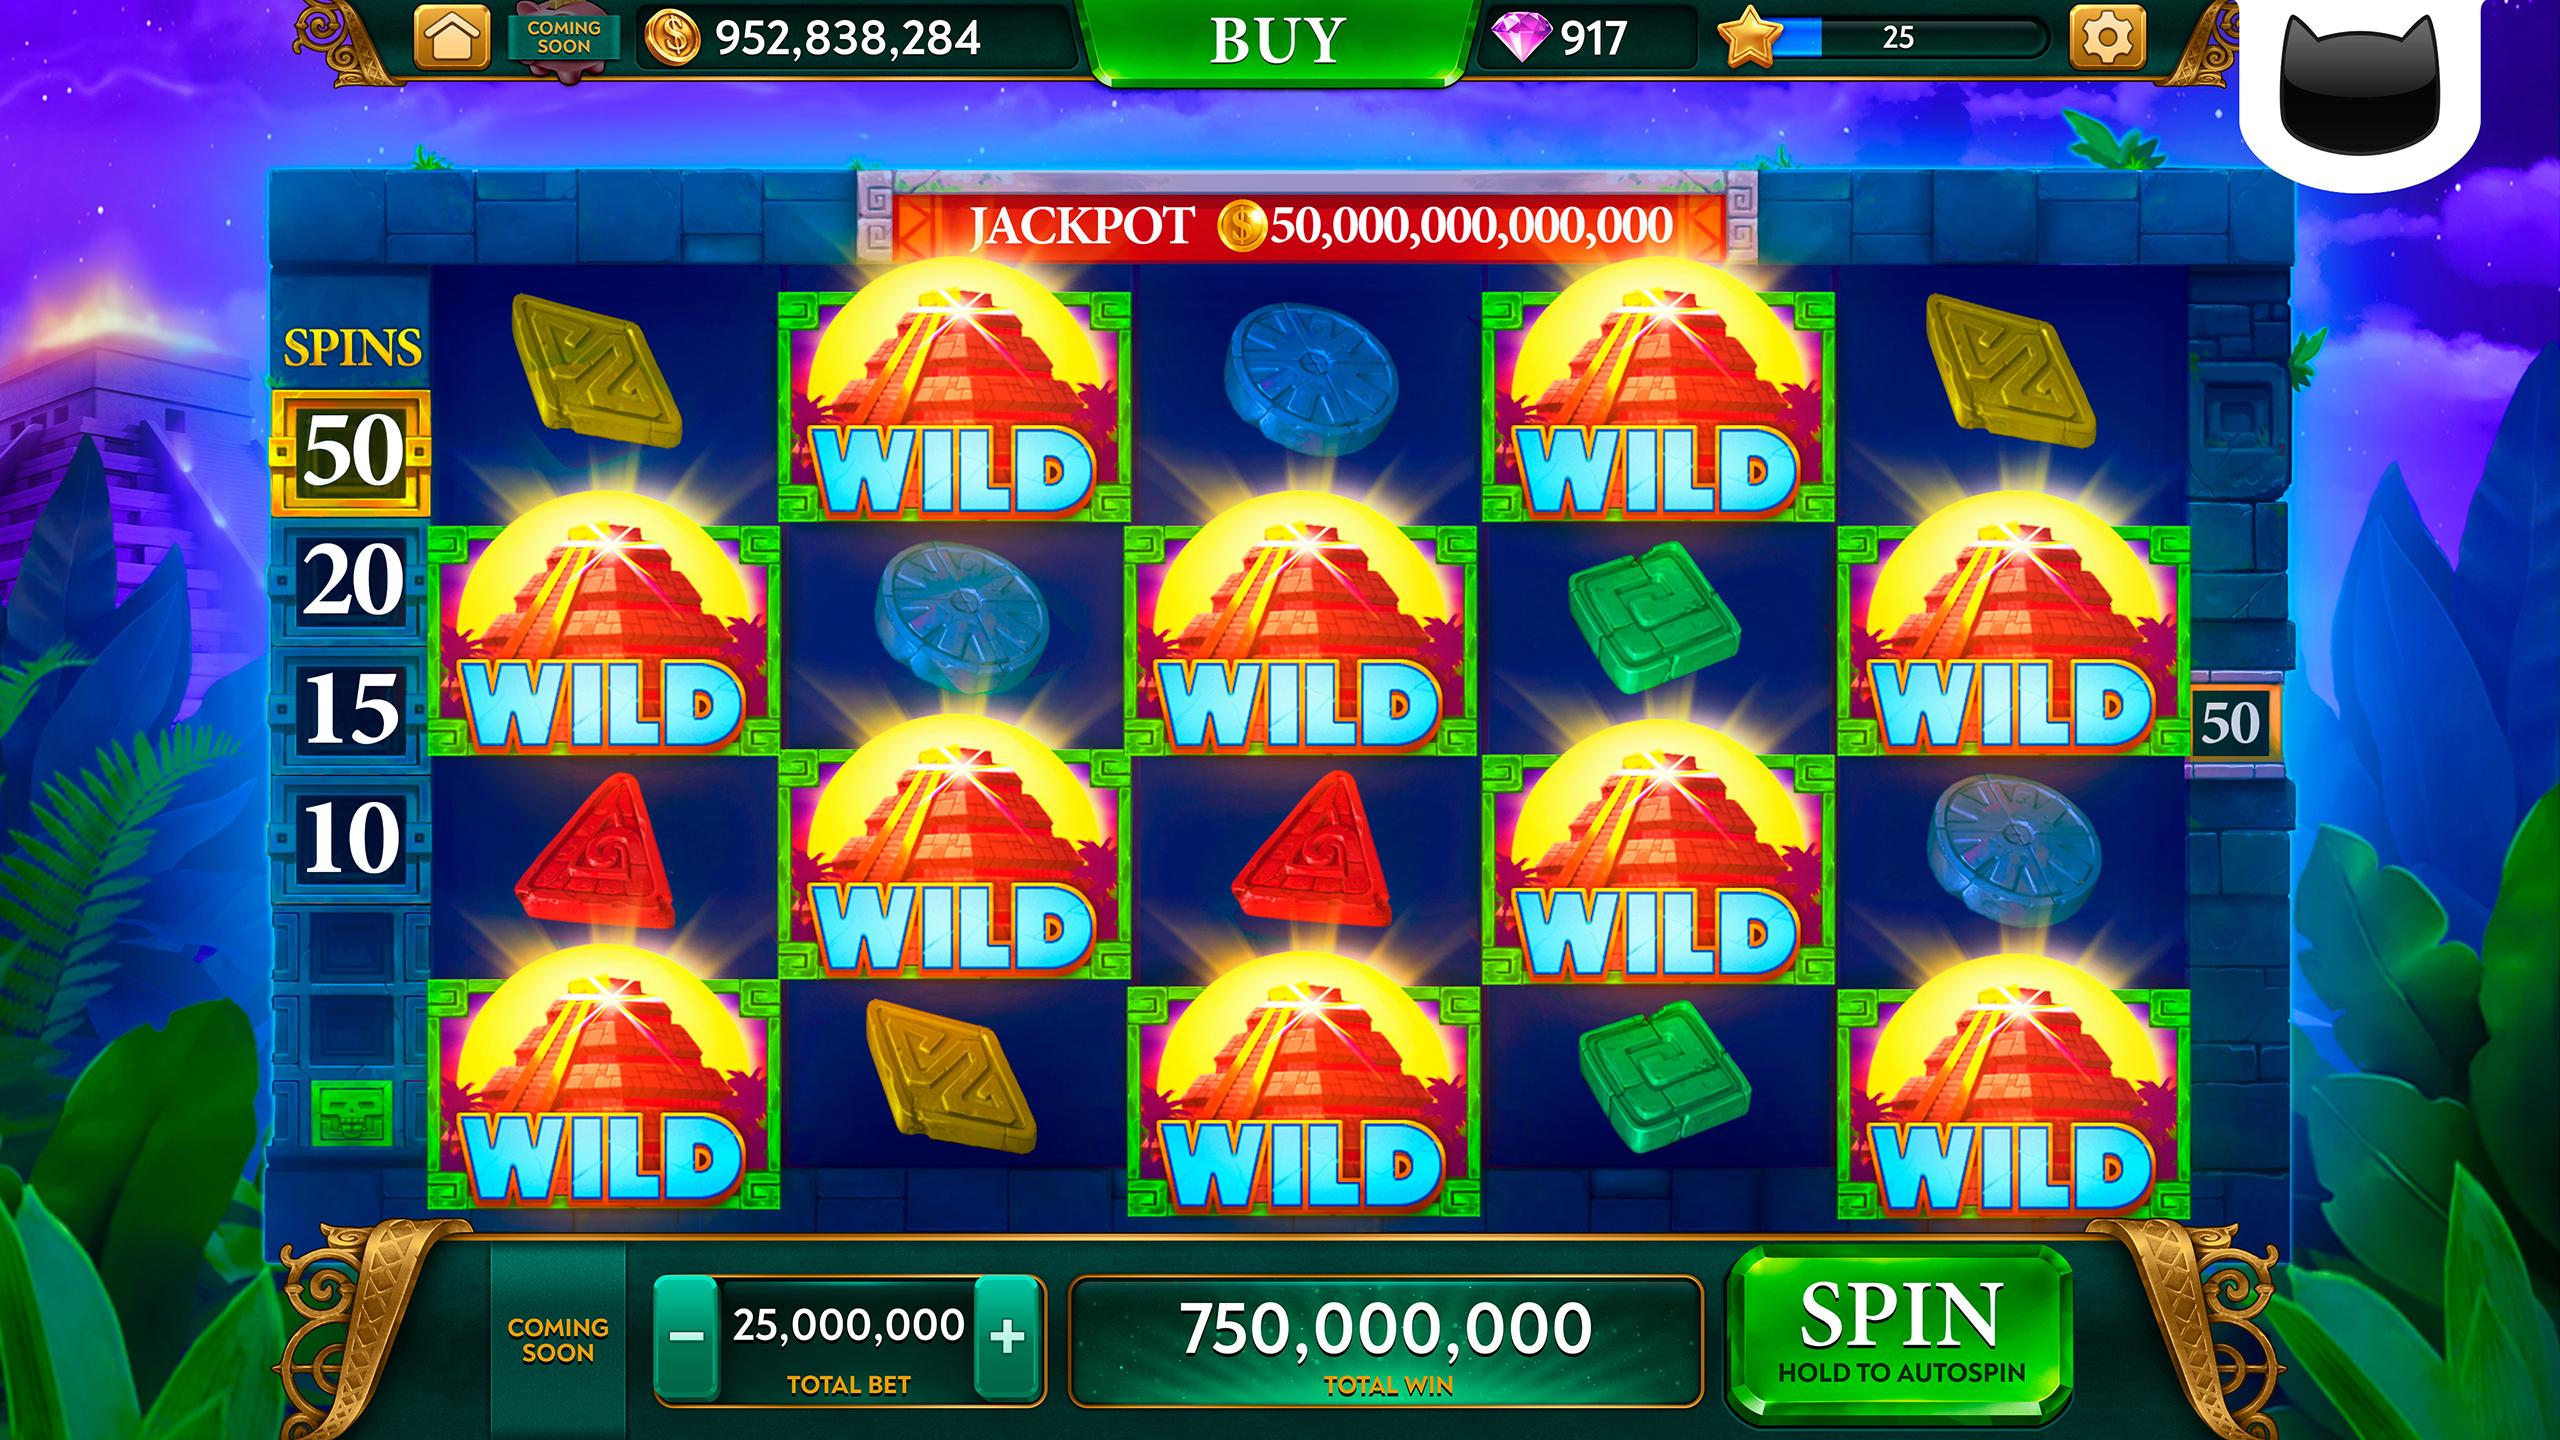 ARK Slots - Wild Vegas Casino & Fun Slot Machines 1.7.1 Screenshot 24